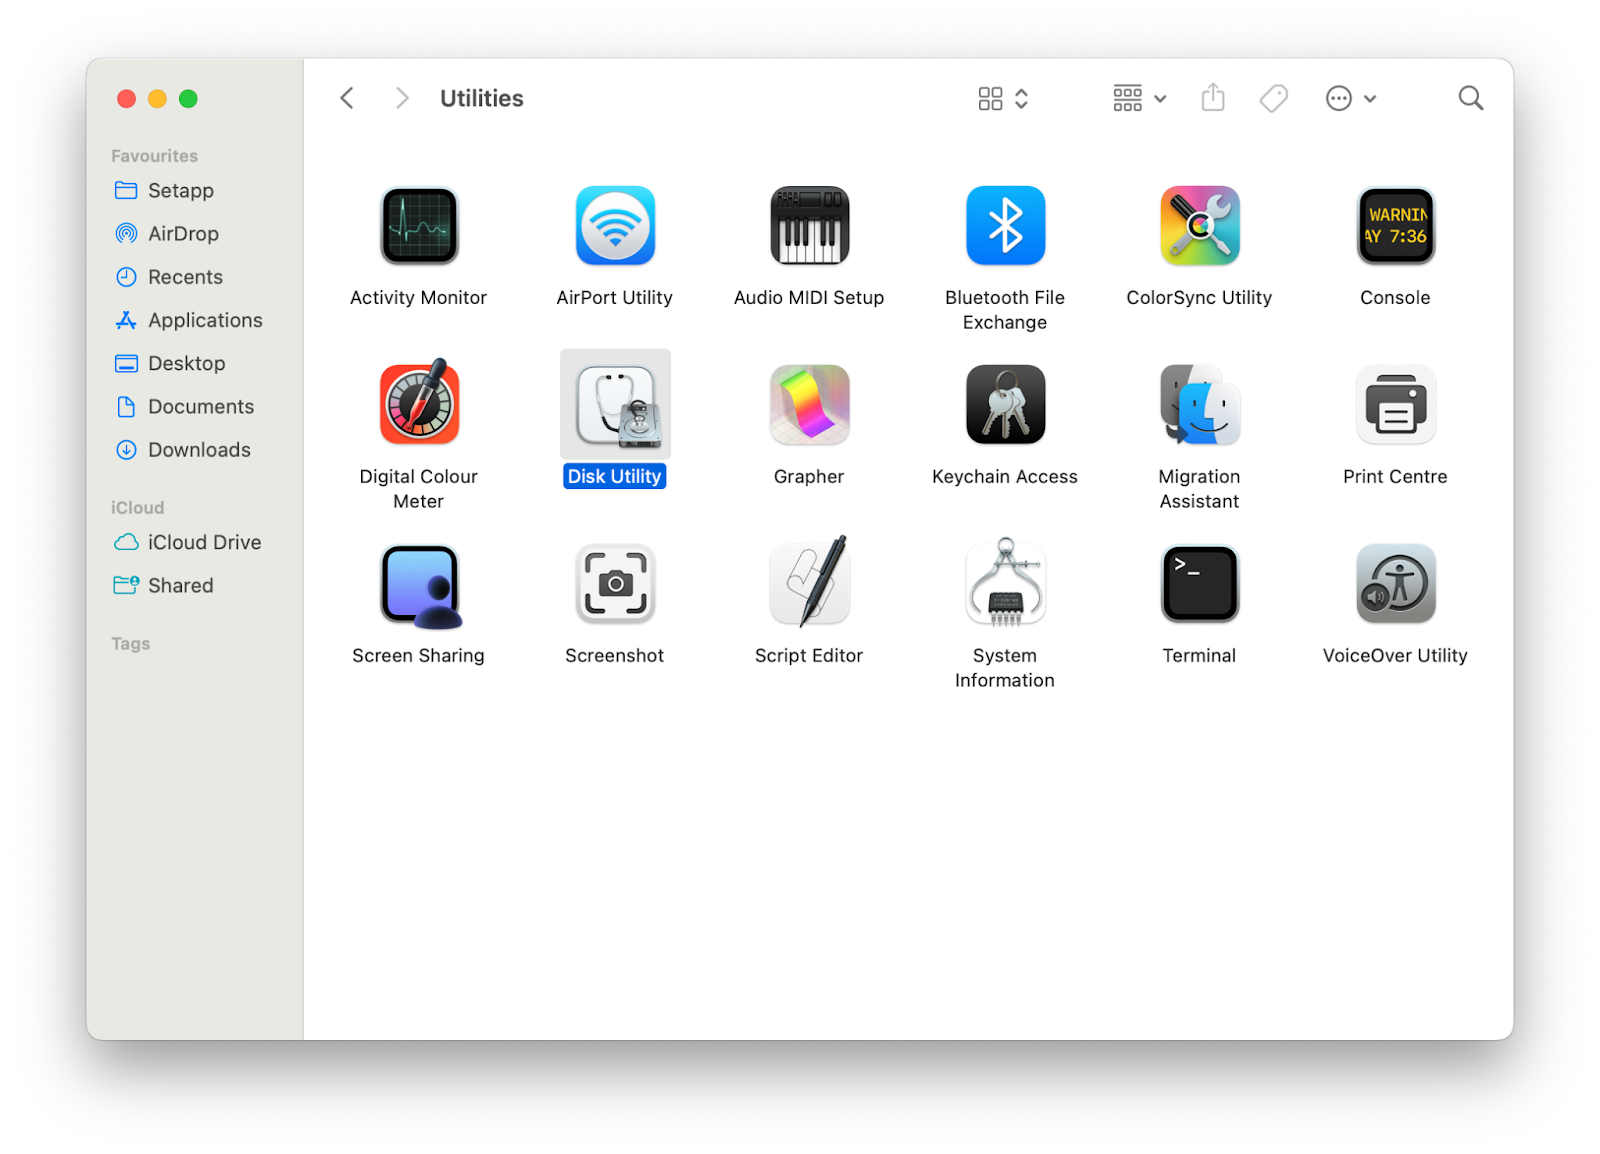 macbook utilities folder